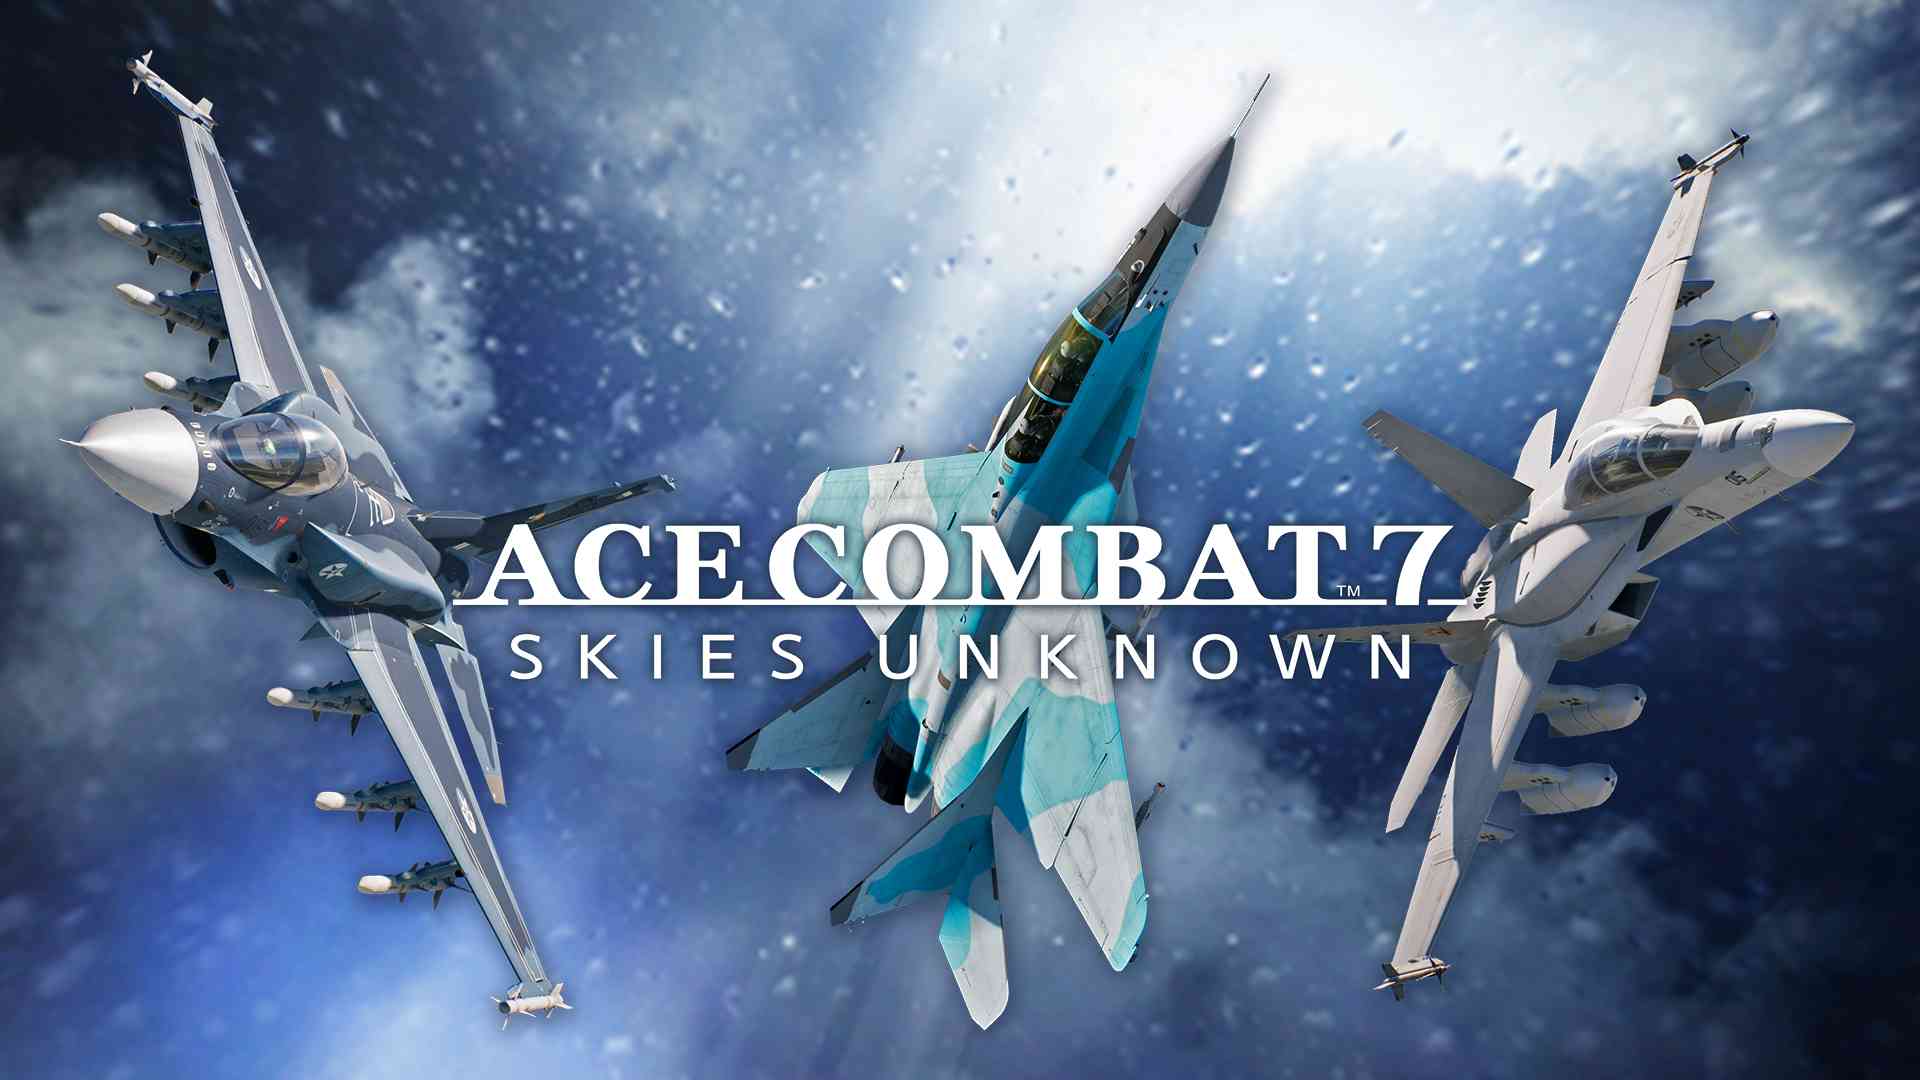 ACE COMBAT™7: SKIES UNKNOWN - Conjunto de serie de aviones sofisticados